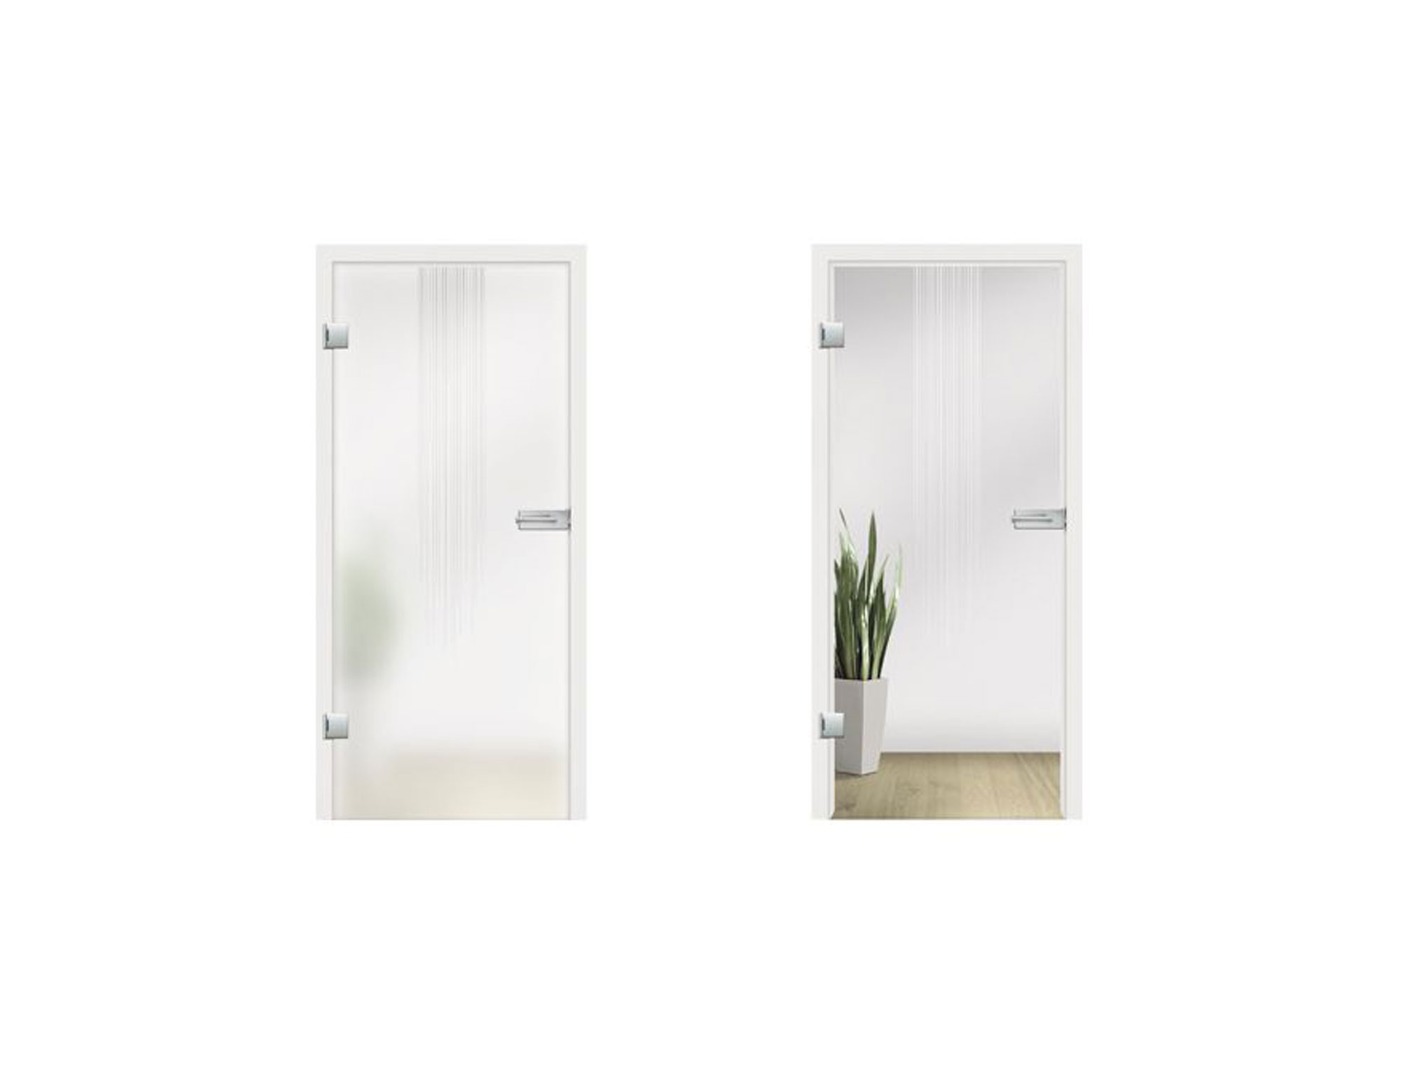 Flow Glass Door Design - Glass Internal Doors